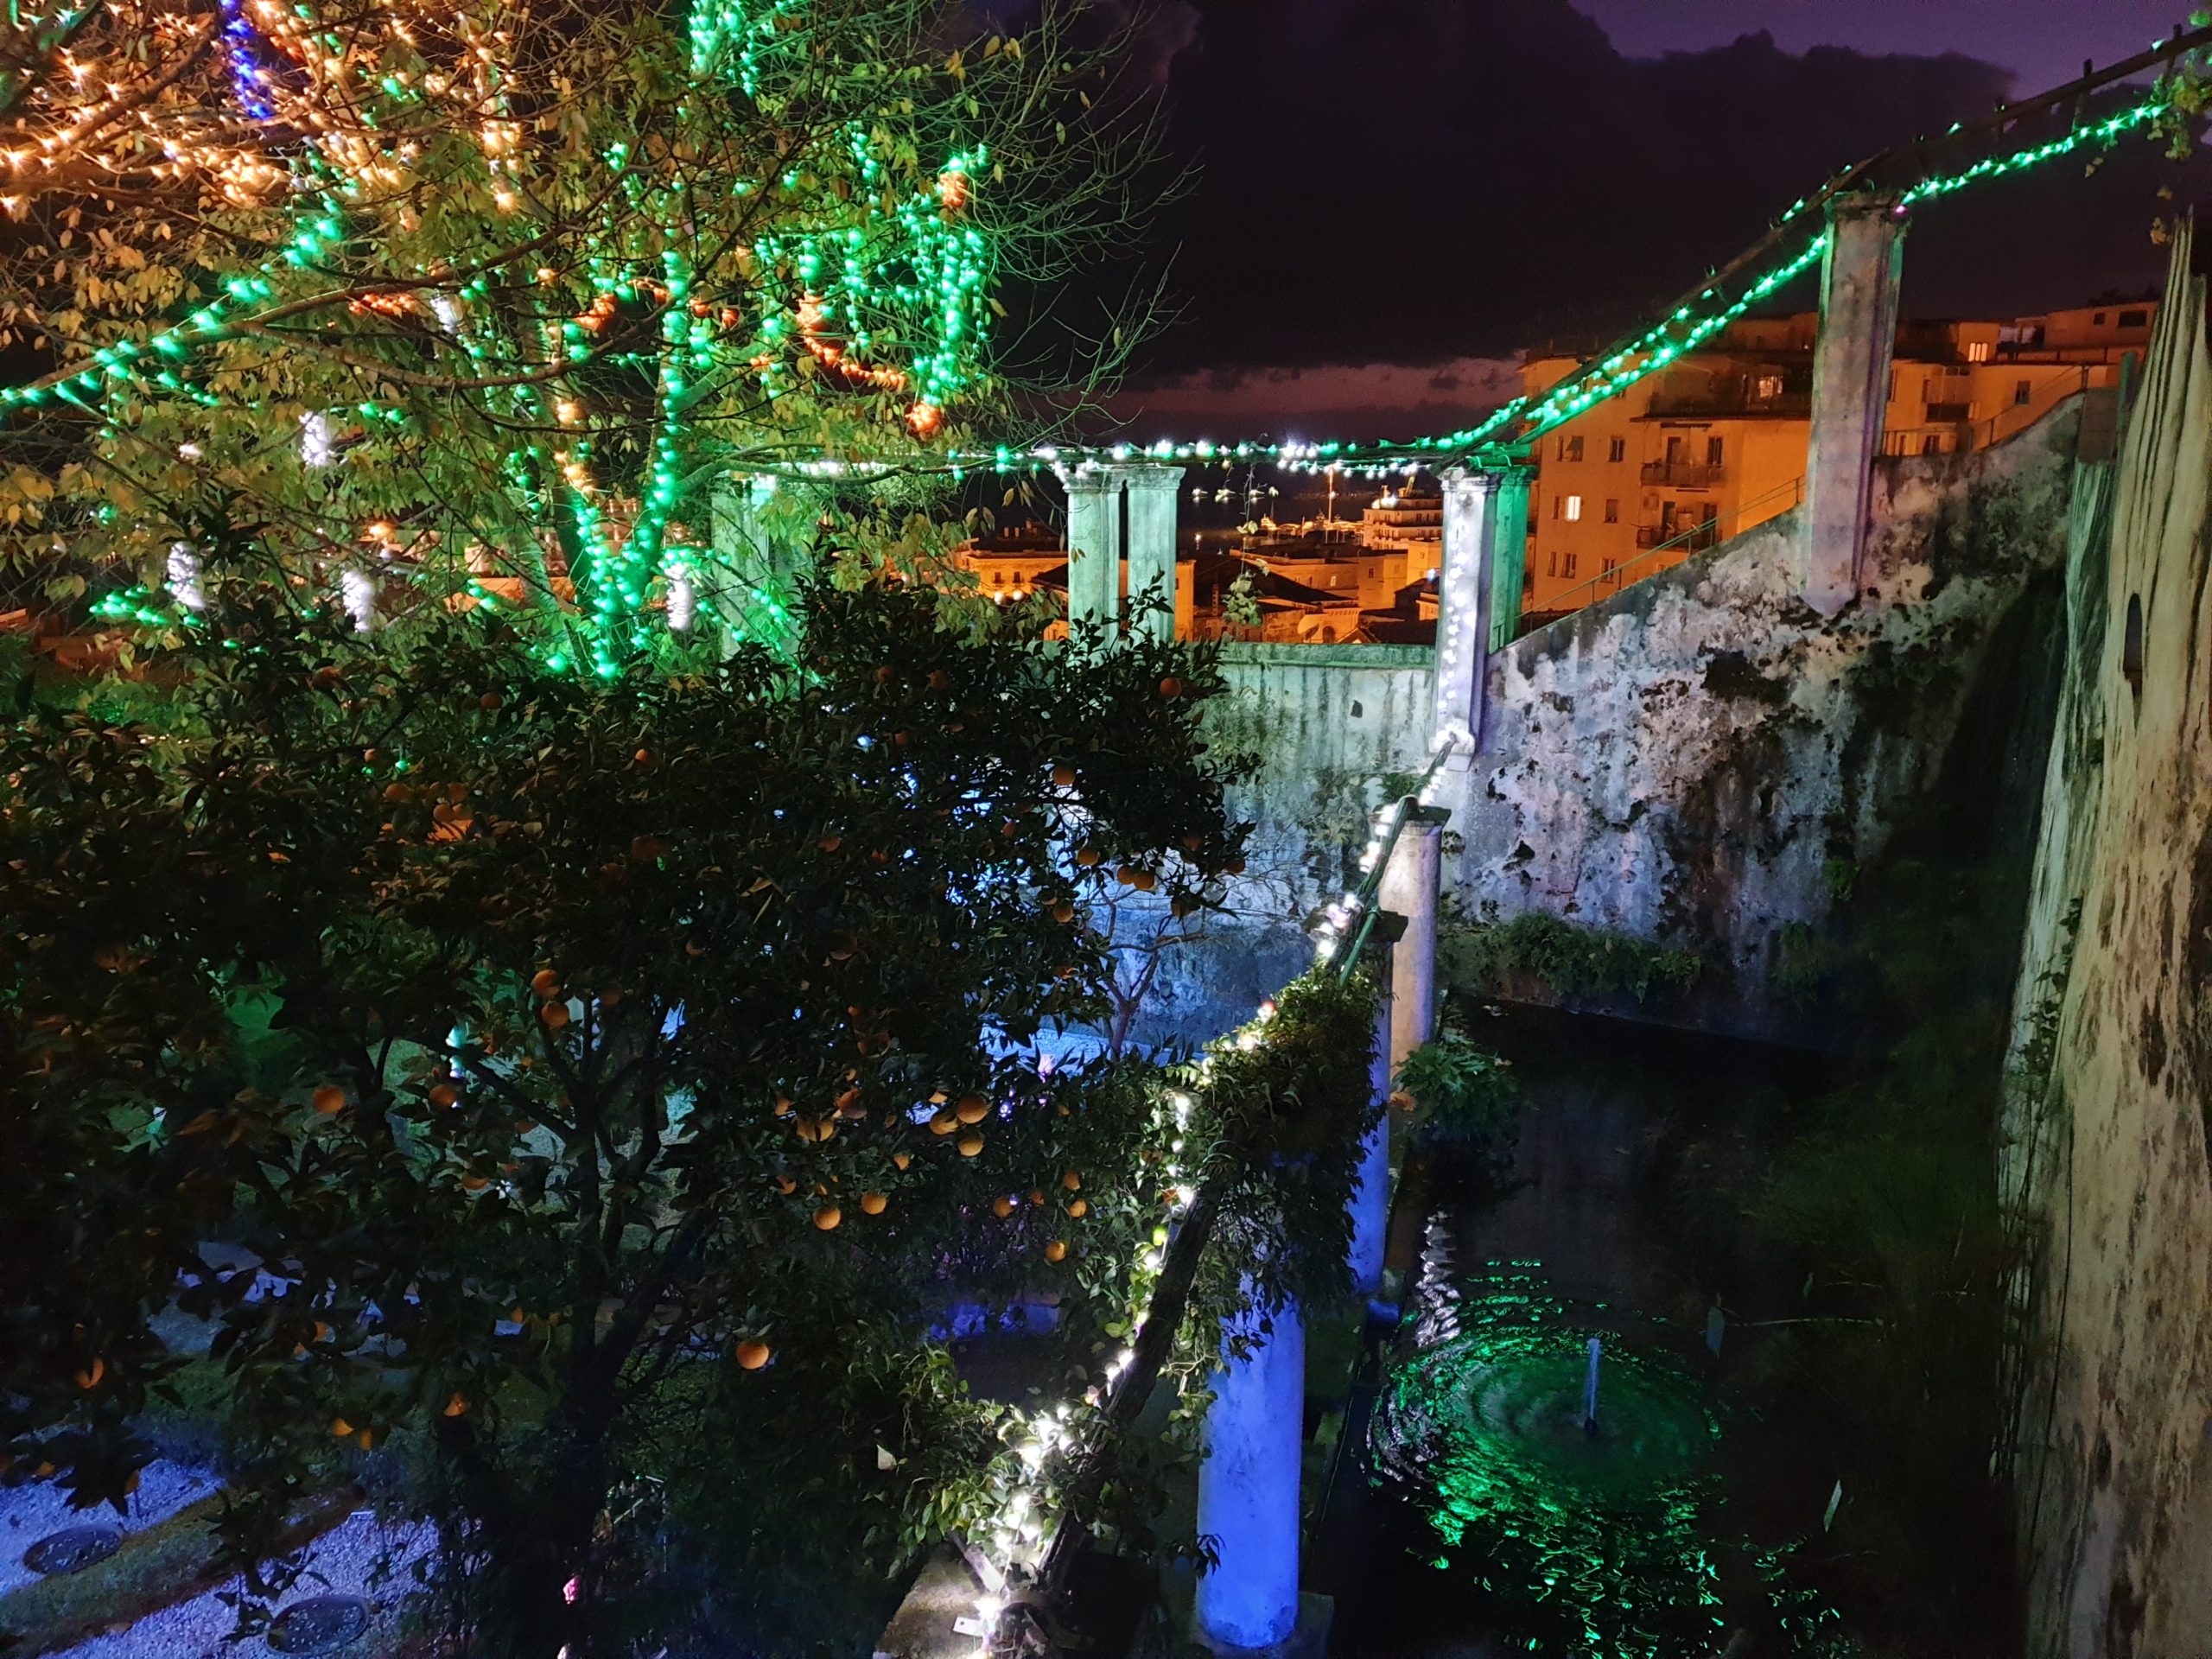 The Minerva Garden lights up with “Lumina Minervae”